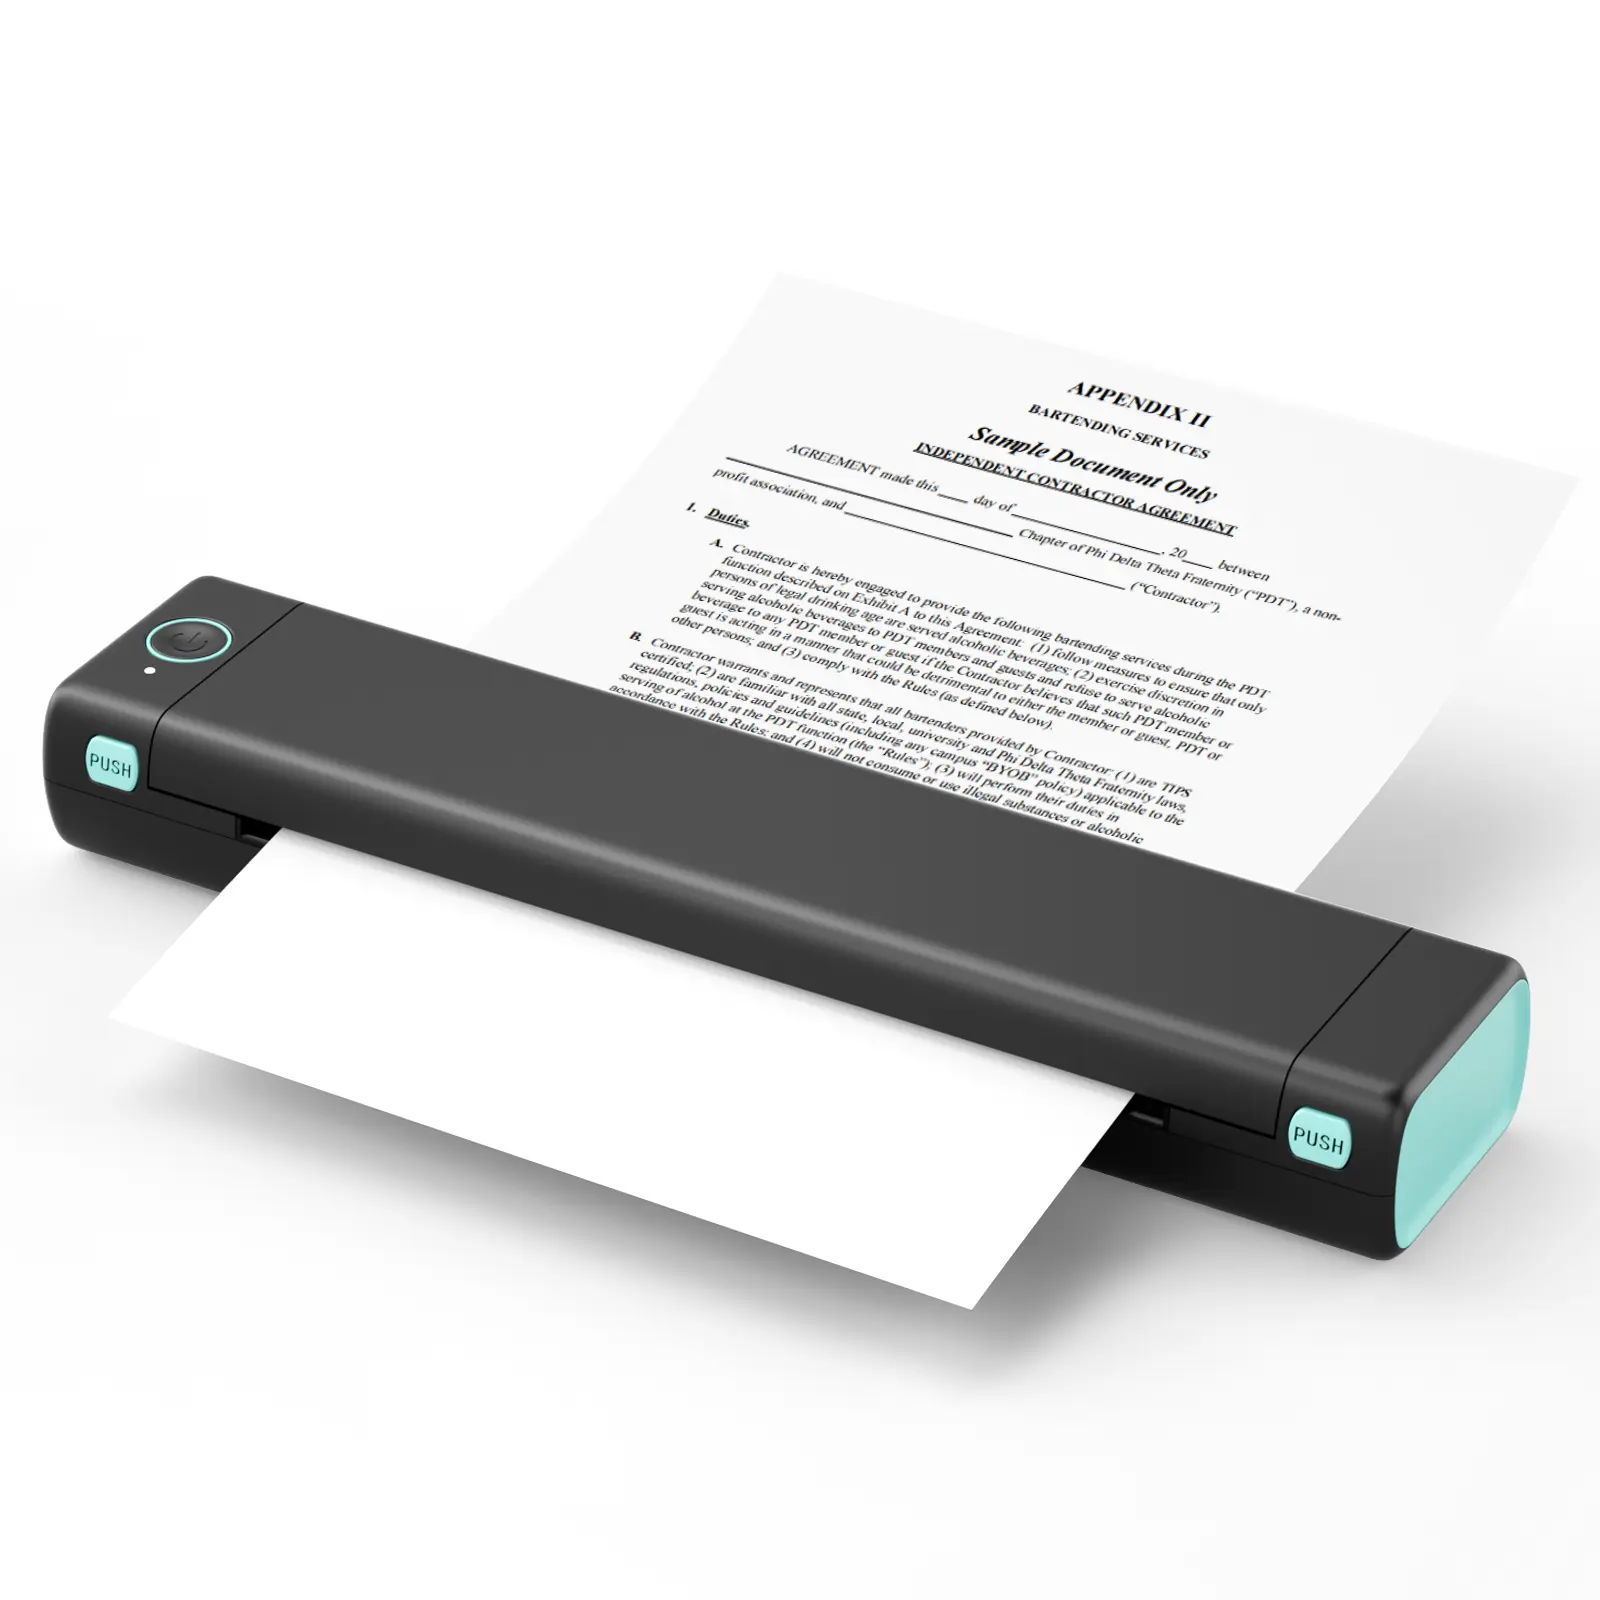 Impressora Phomemo M08F A4 portátil, impressora térmica de bolso sem fio para imprimir PDF, Word, imagens, web a partir do seu telefone